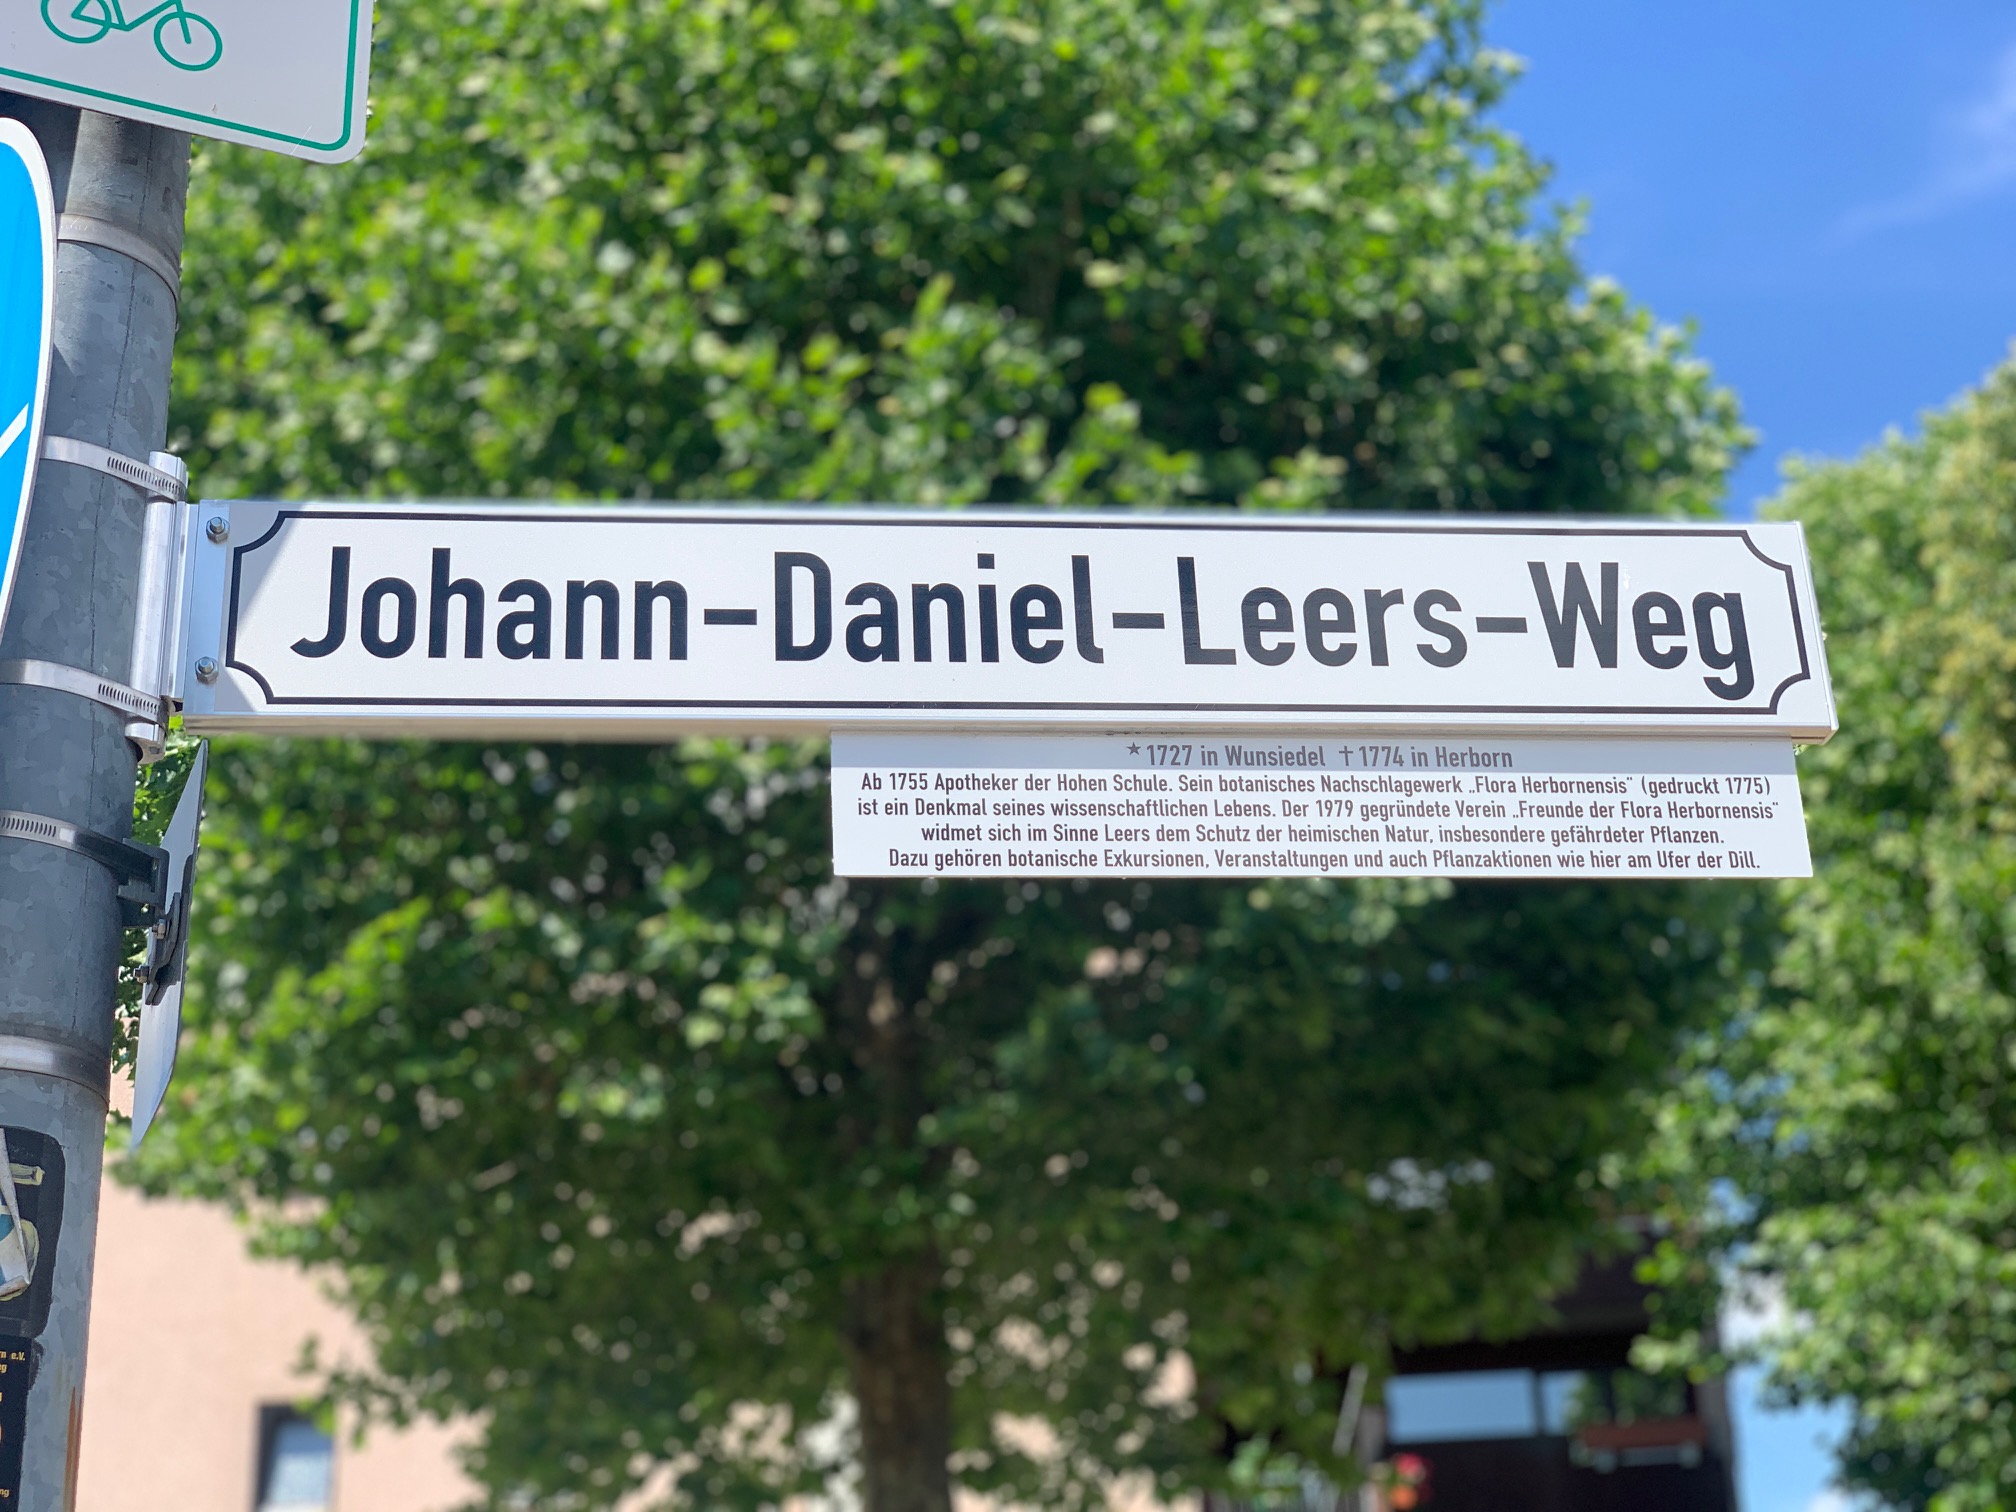 Straßenschild der Johann-Daniel-Leers-Weg in Herborn